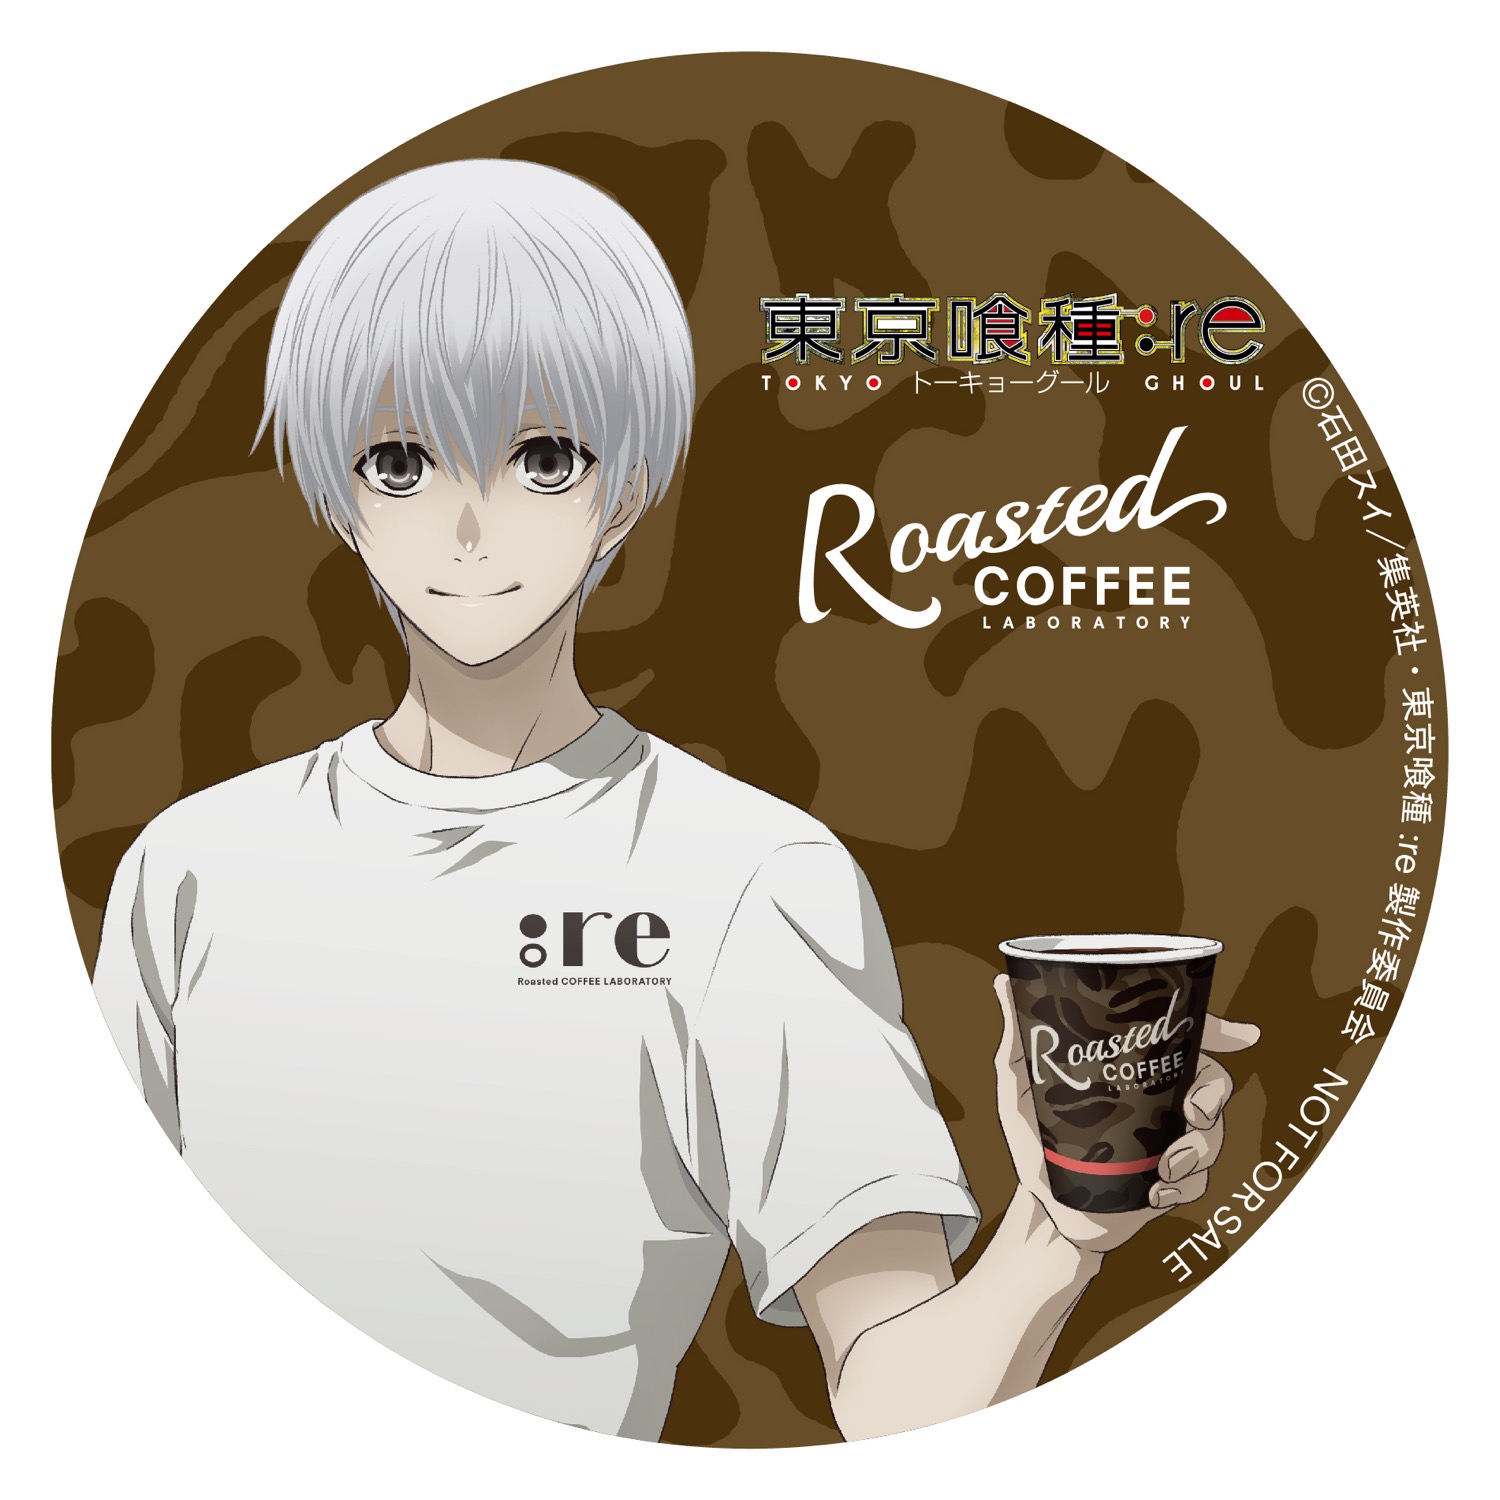 東京喰種 Re Roasted Coffee コラボカフェ開催 8 2 8 12 Roasted Coffee 池袋 コラボカフェ トーキョー